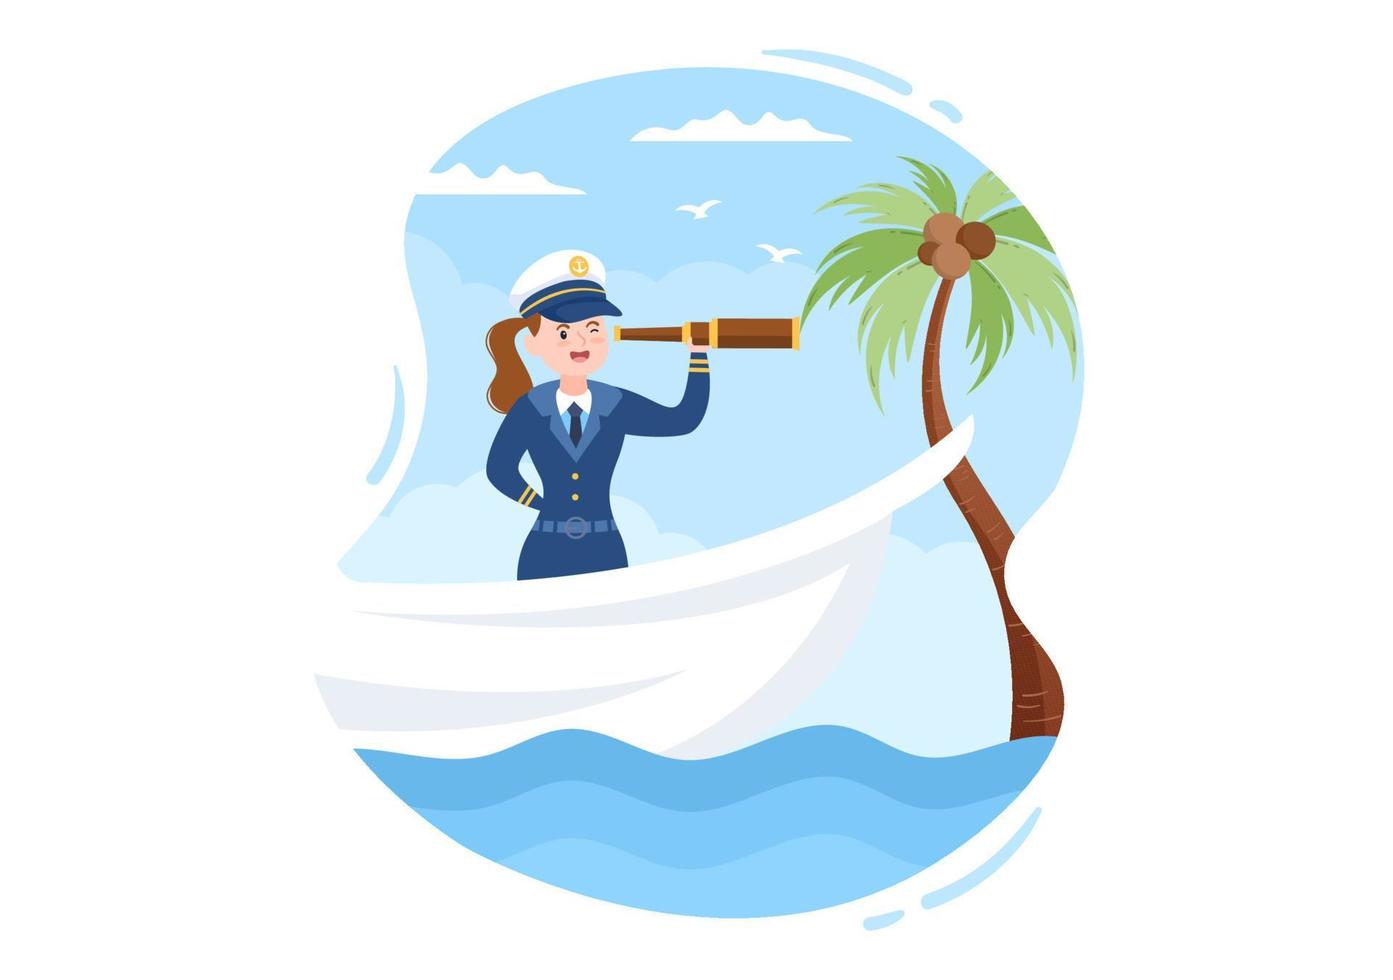 ilustração de desenhos animados de capitão de navio de cruzeiro de mulher em uniforme de marinheiro montando um navio, olhando com binóculos ou em pé no porto em design plano vetor